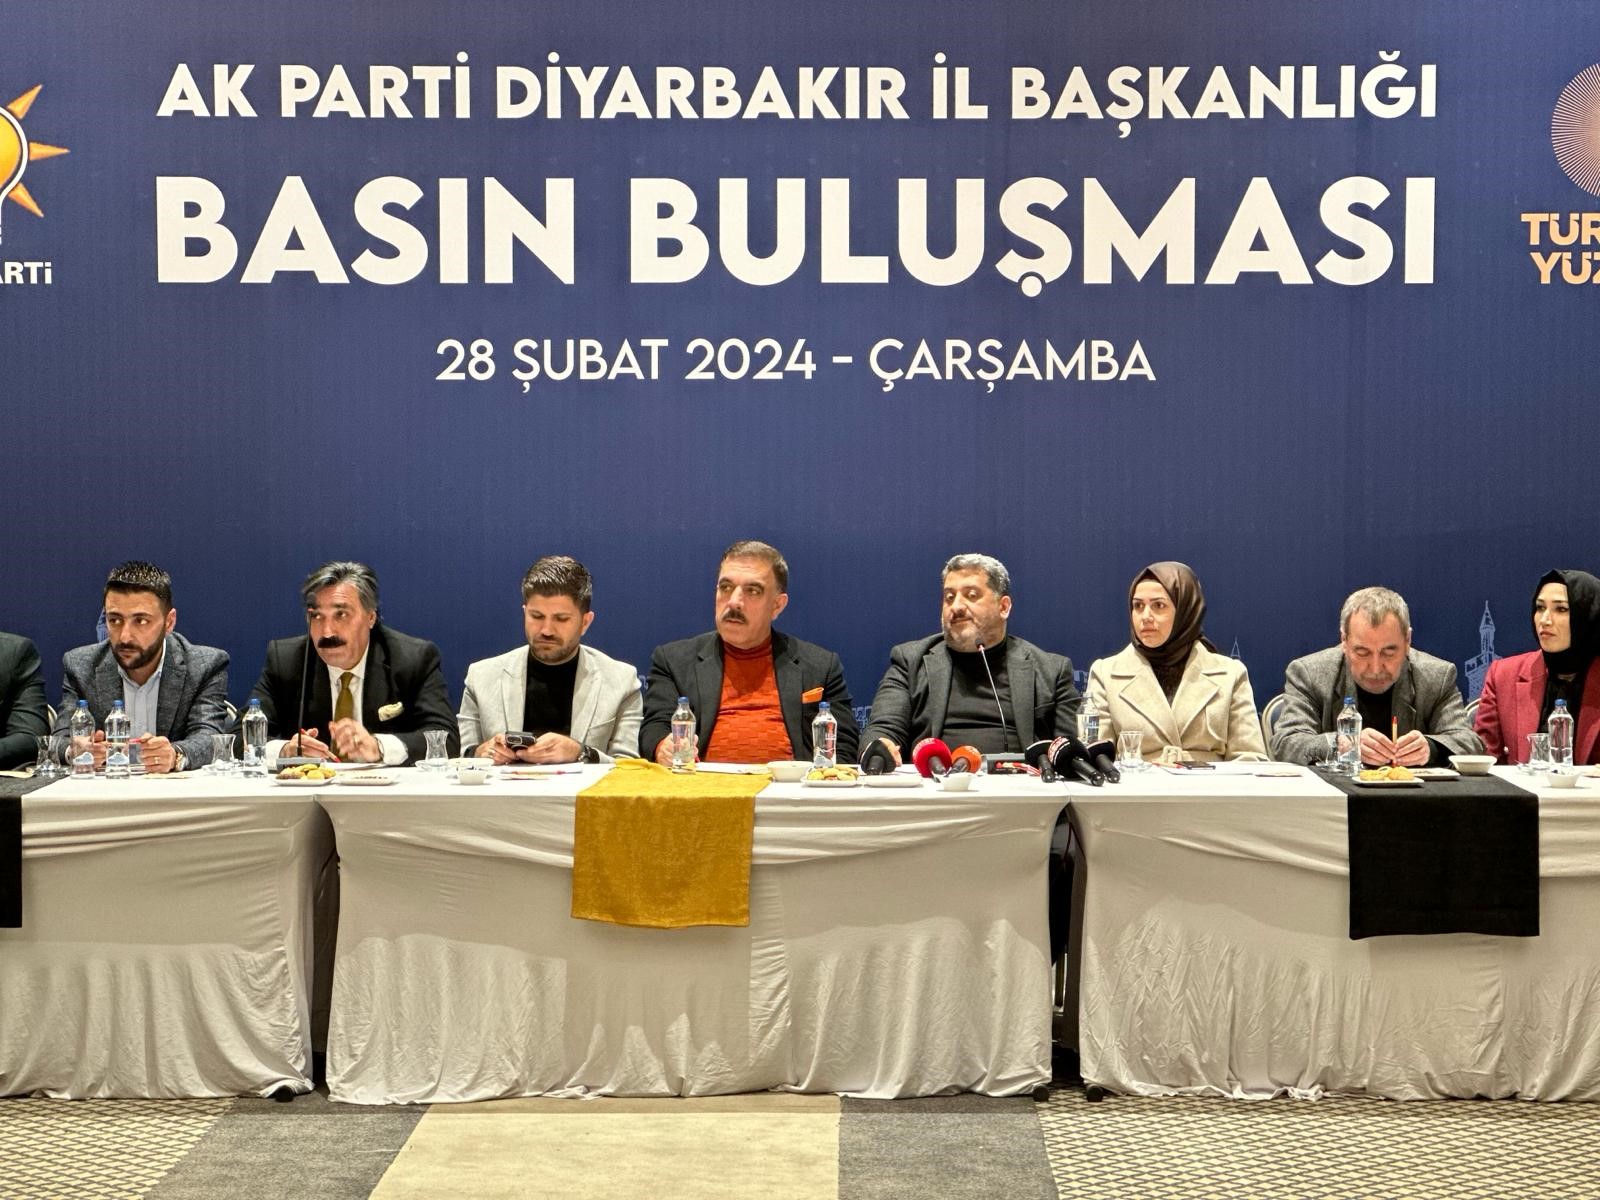 AK Parti İl Başkanı Ocak: Diyarbakır’da bu yıl hedef 2 buçuk milyon kişi